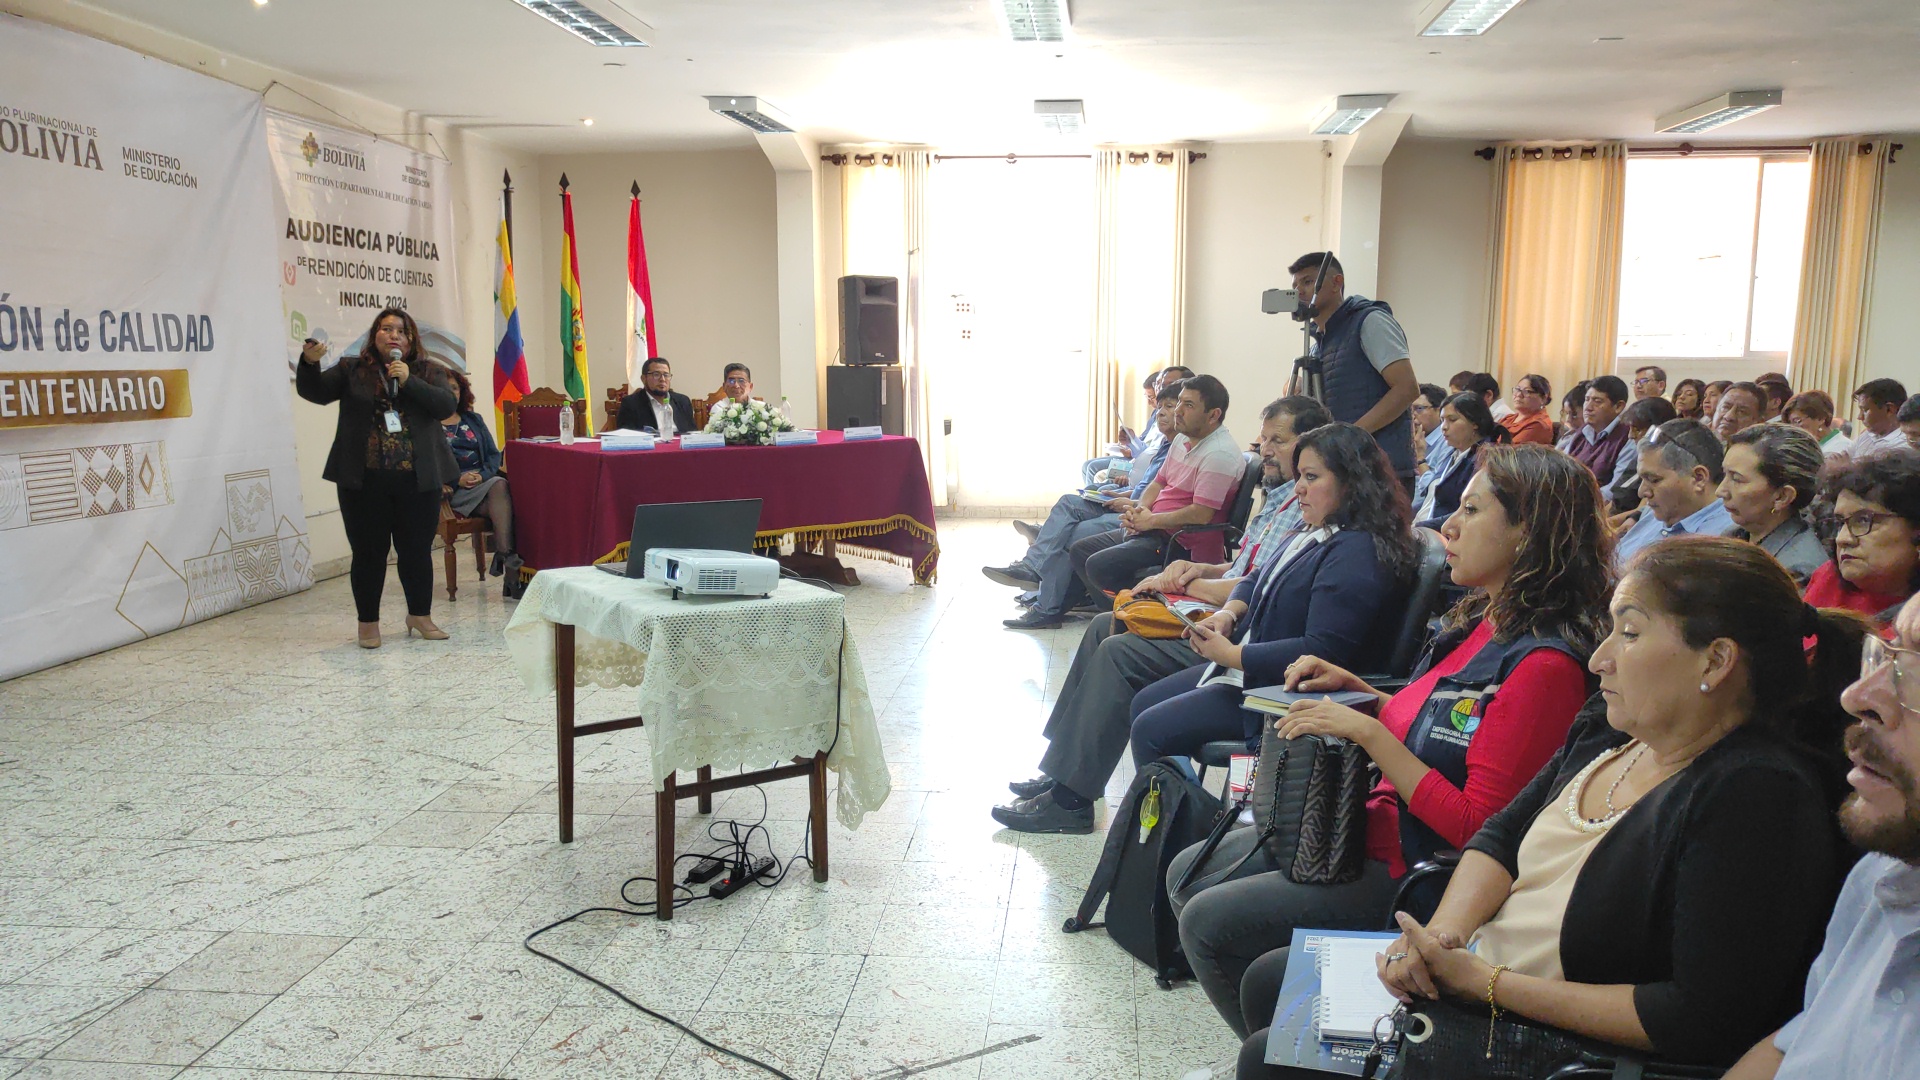 La Defensoría del Pueblo participa en Rendición de Cuentas Inicial del ámbito educativo en Tarija